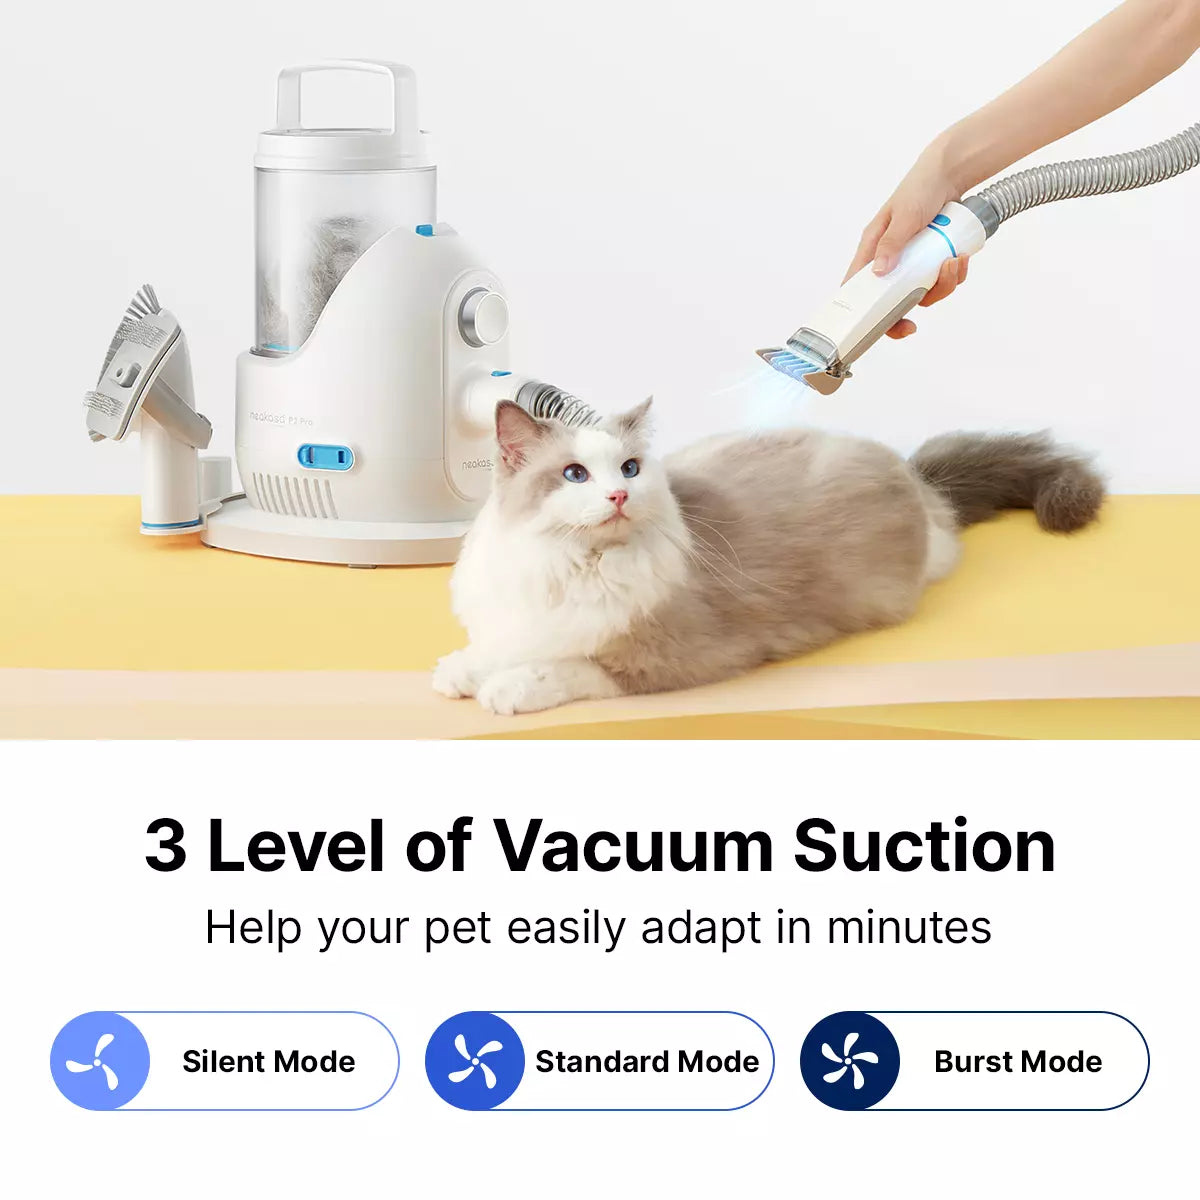 Neakasa P2 Pro 5-in-1 Dog Cat Grooming Kit with Vacuum